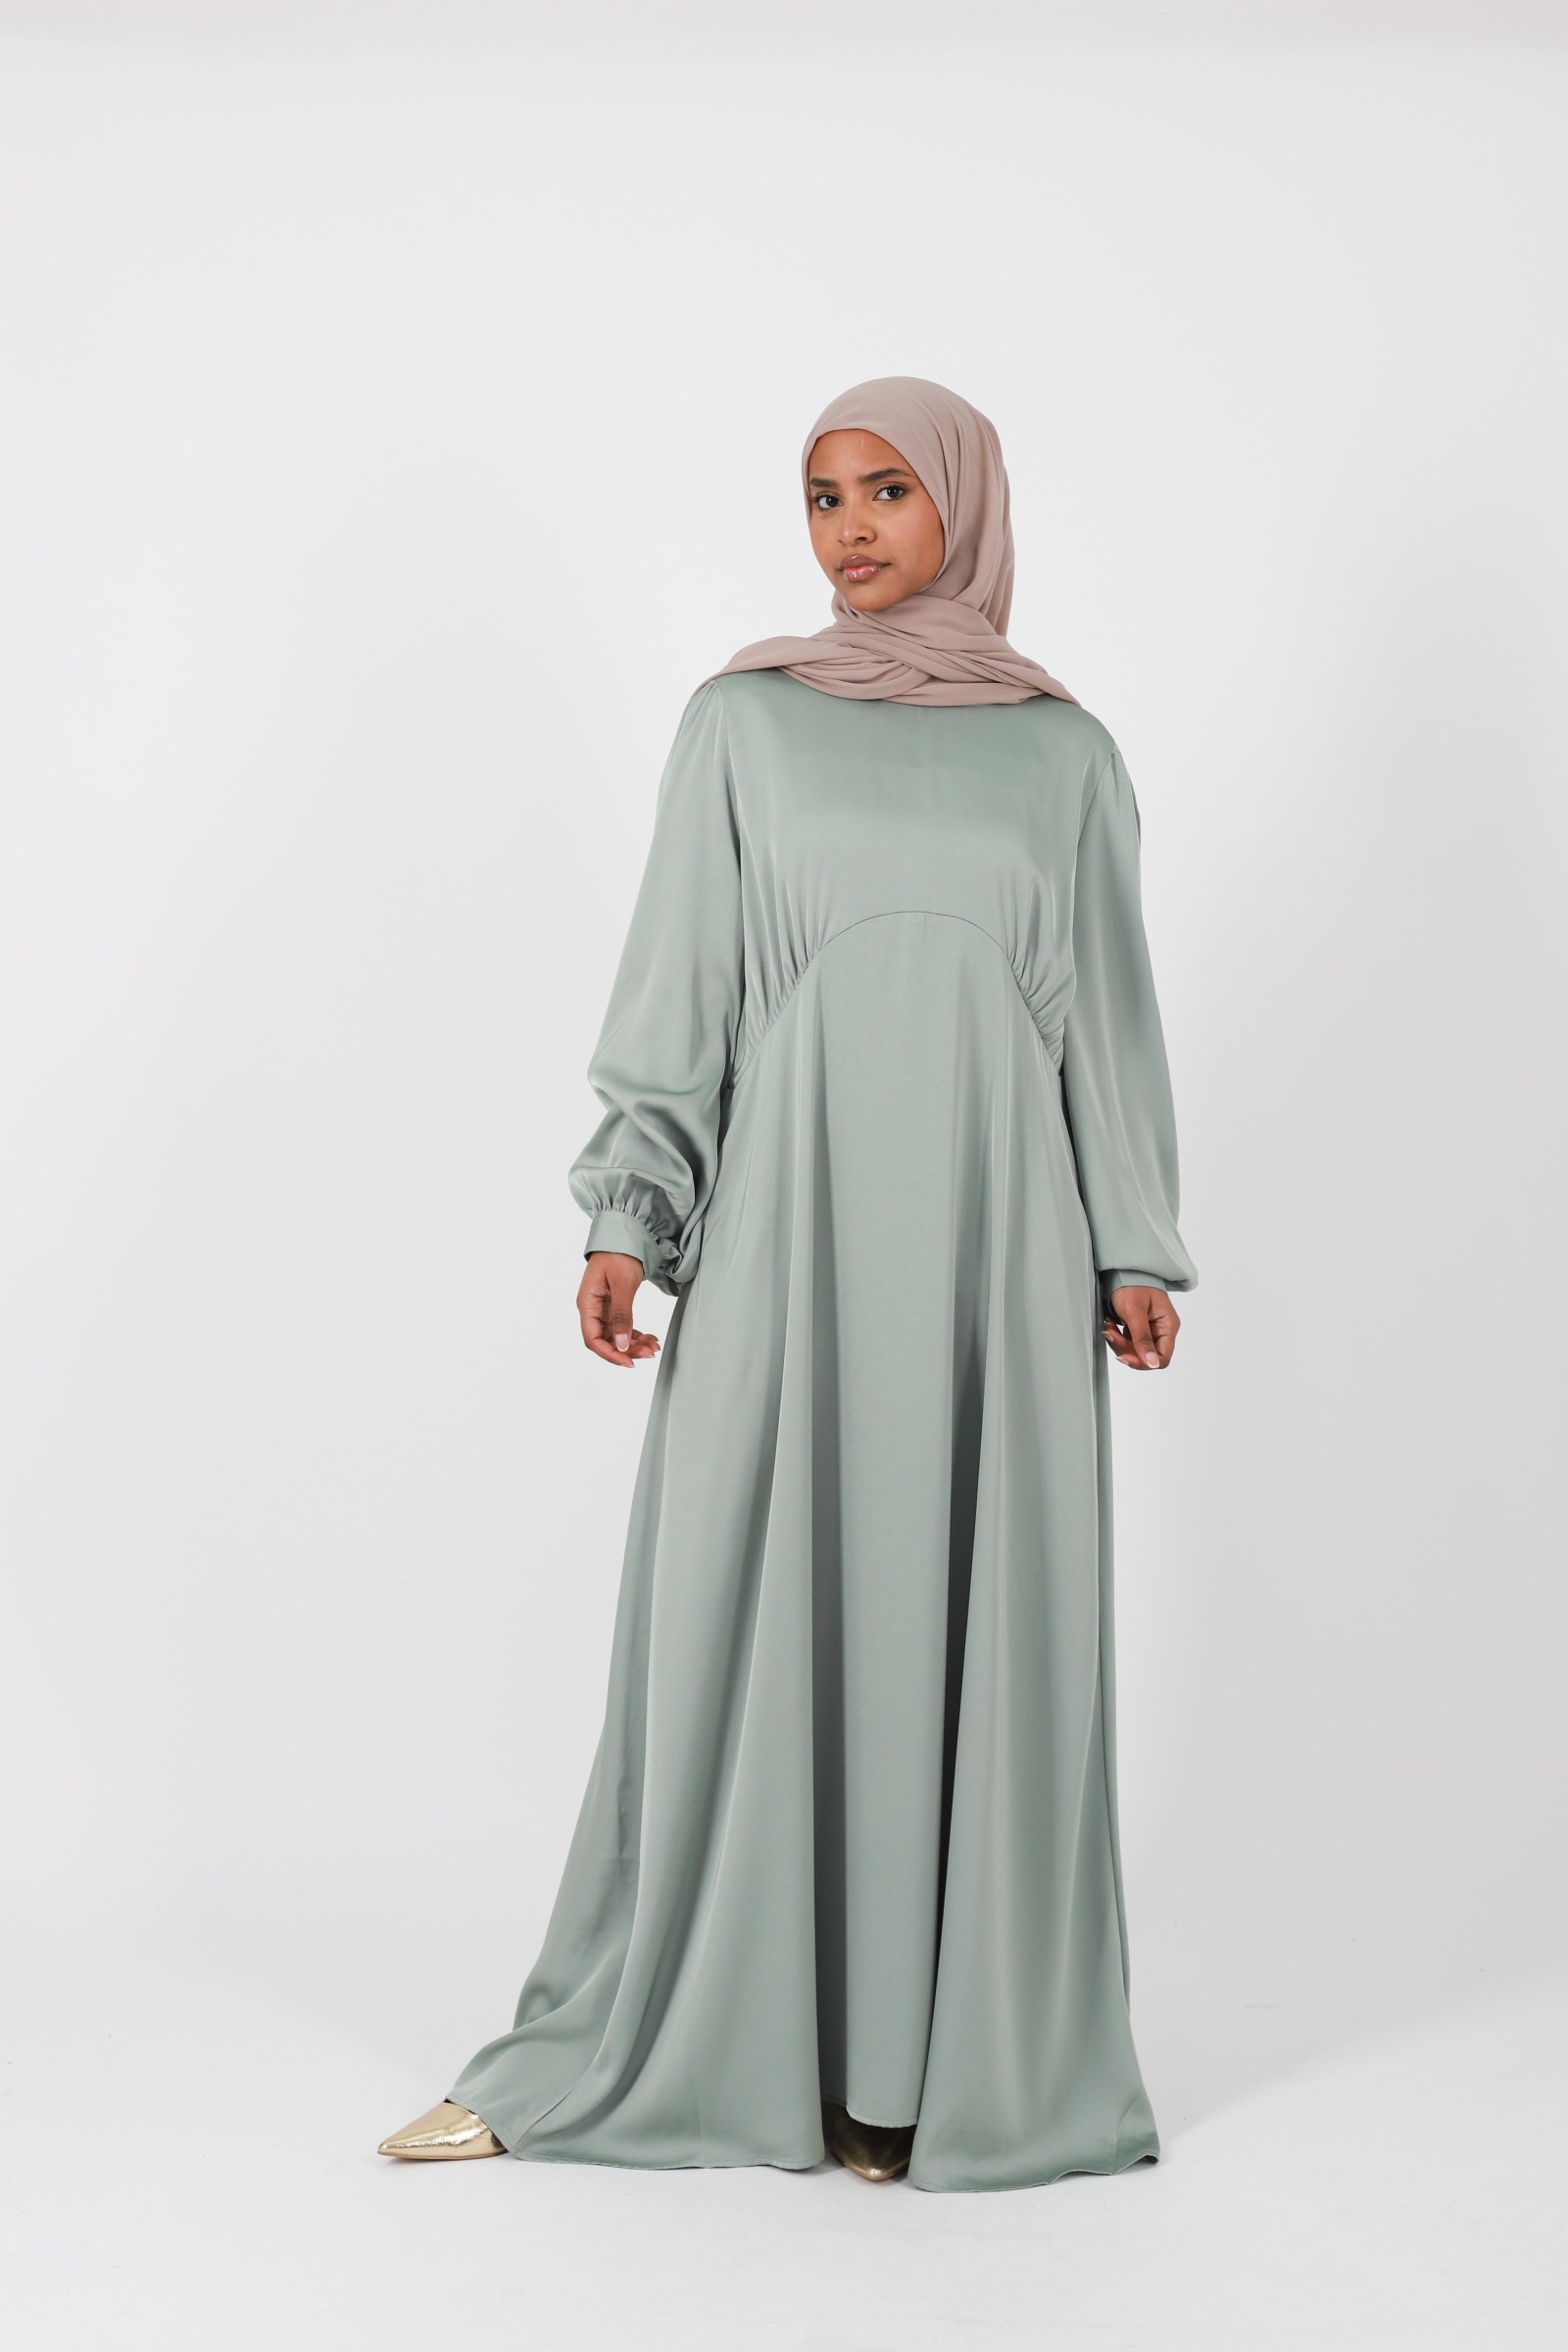 Robe de fête pour femme musulmanes chic et modeste